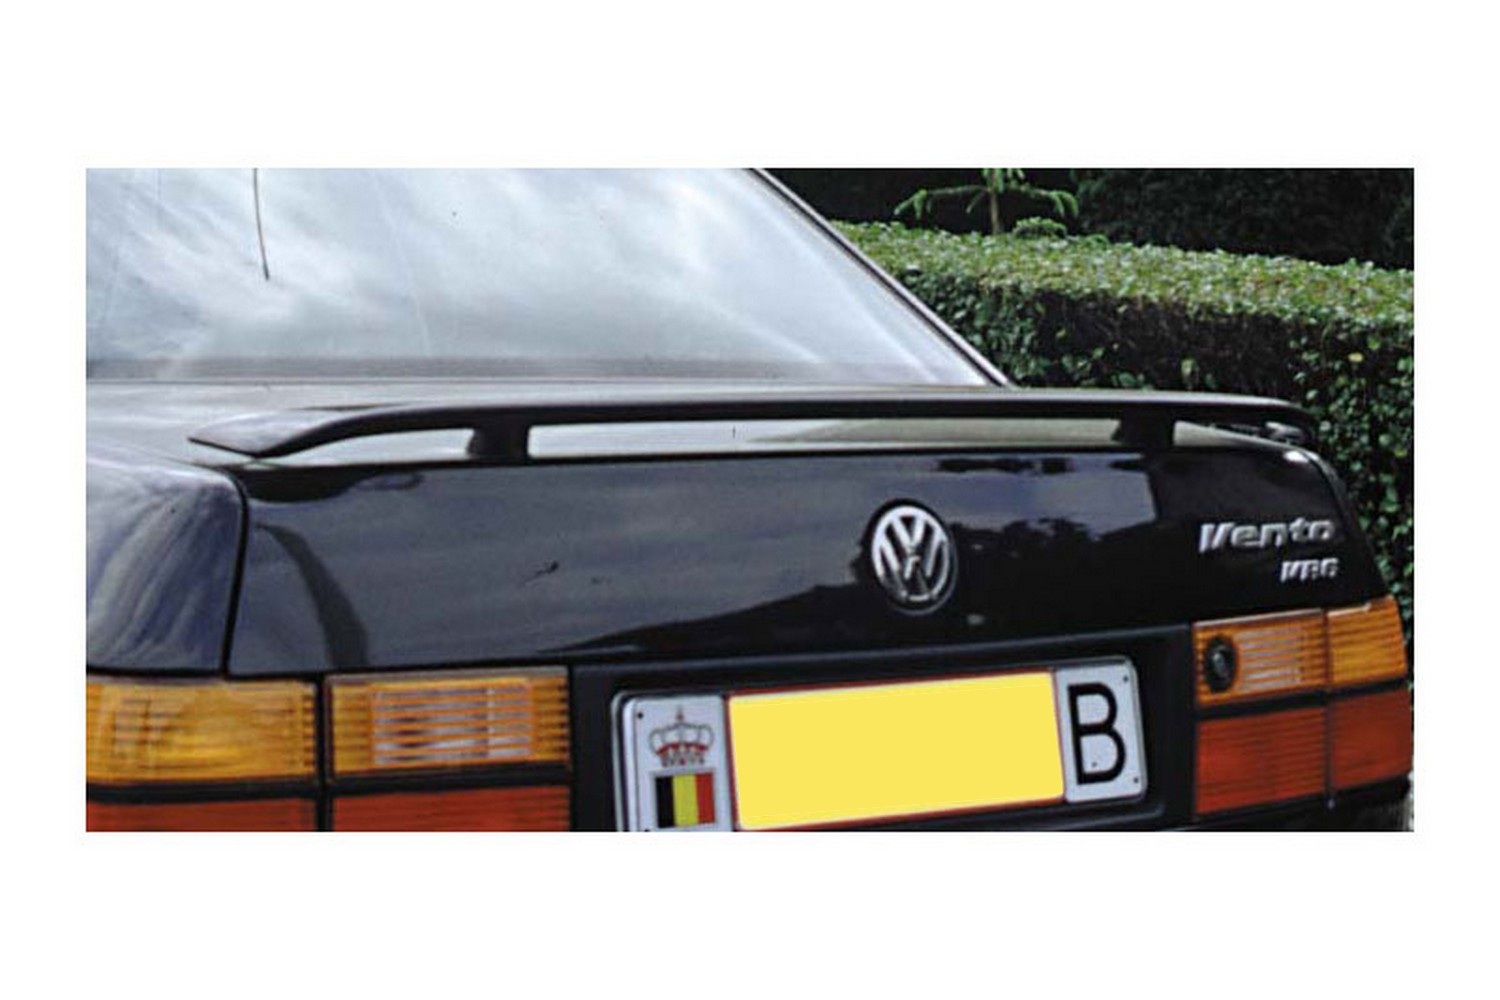 https://www.carparts-expert.com/images/stories/virtuemart/product/vw2jesu-volkswagen-vento-jetta-1992-1999-4-door-saloon-trunk-spoiler-1.jpg